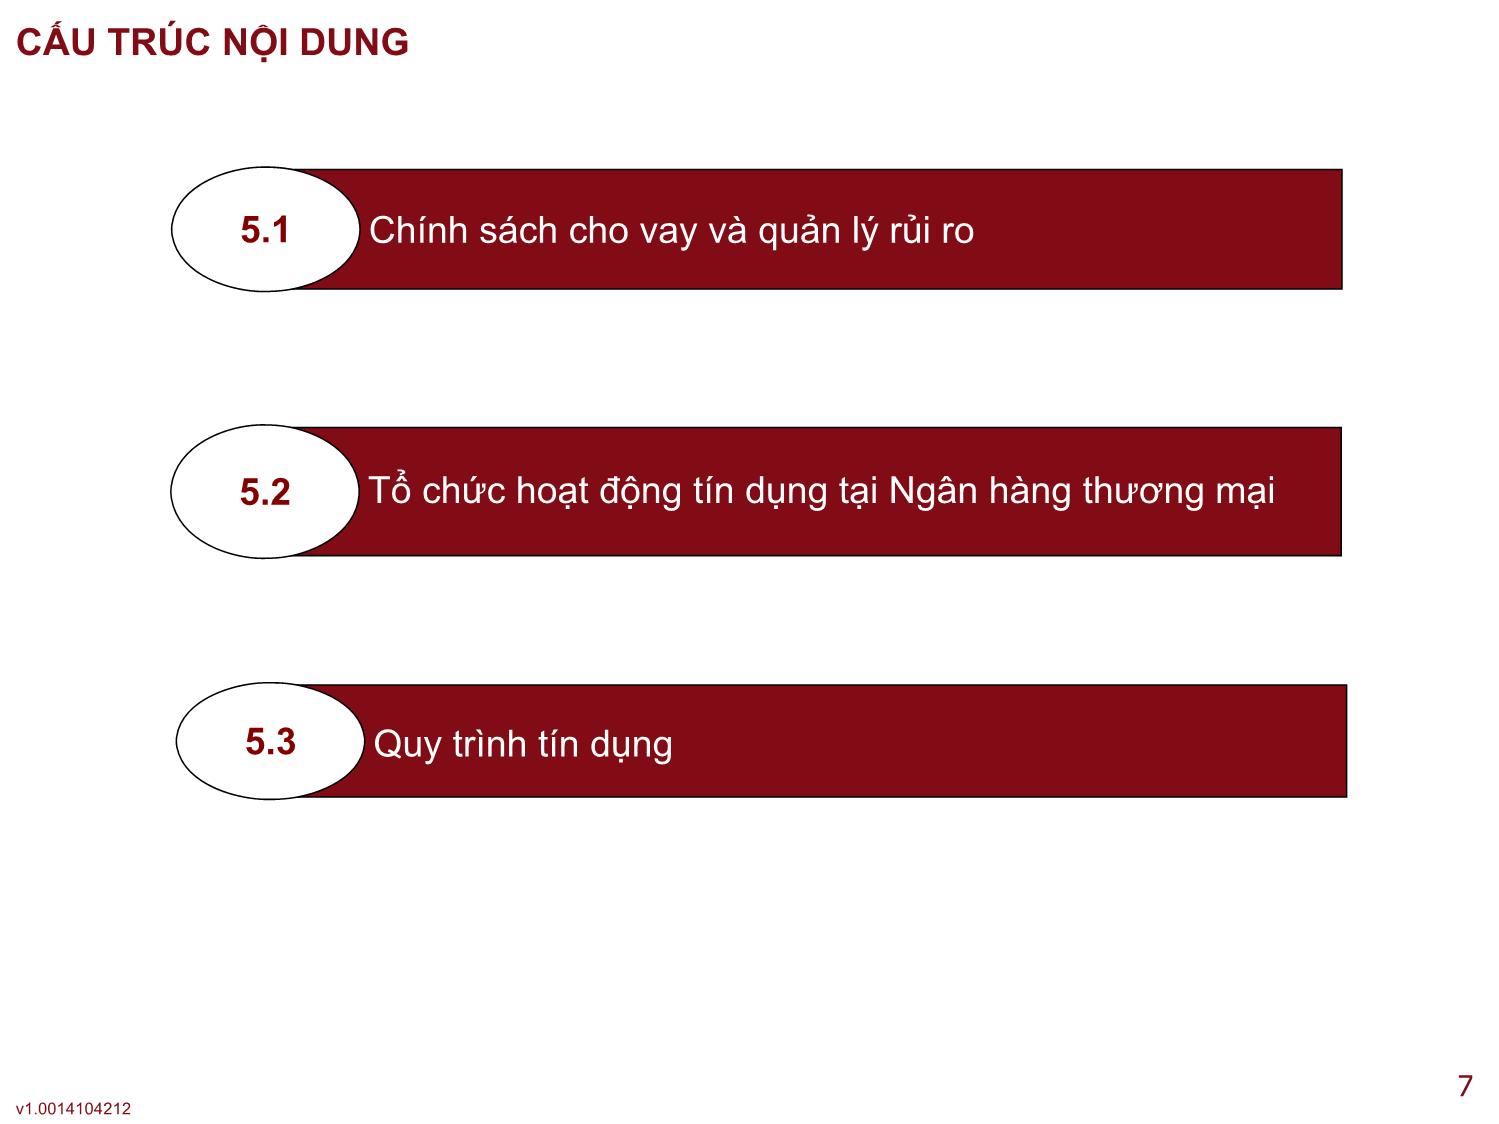 Tín dụng ngân hàng - Bài 5: Quy trình cho vay của các ngân hàng thương mại Việt Nam trang 7